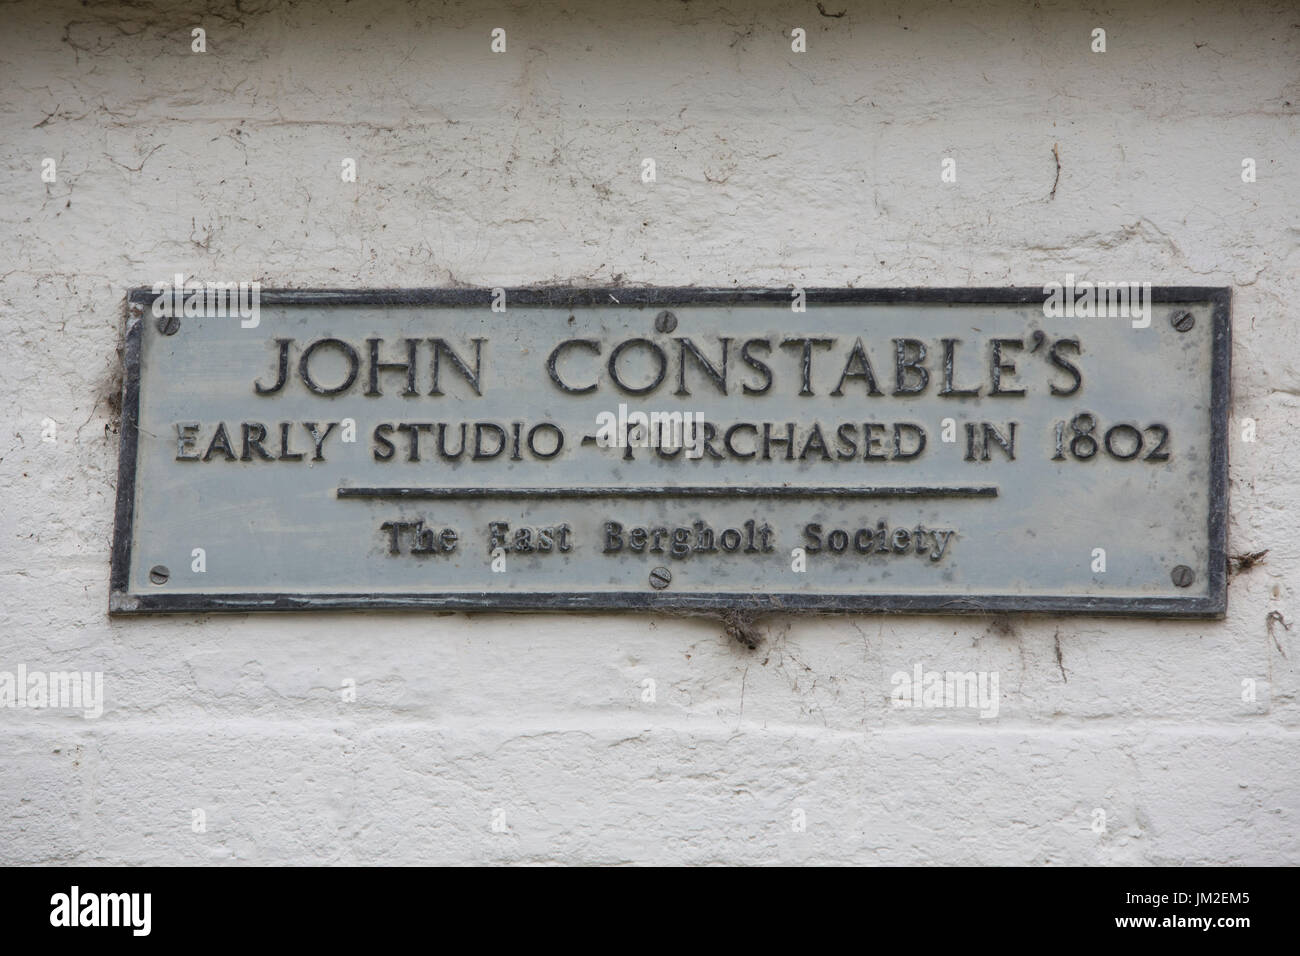 East Bergholt, dans le Suffolk, village de naissance du peintre John Constable, Babergh, district de la vallée de la Stour, Suffolk, Angleterre, Royaume-Uni Banque D'Images